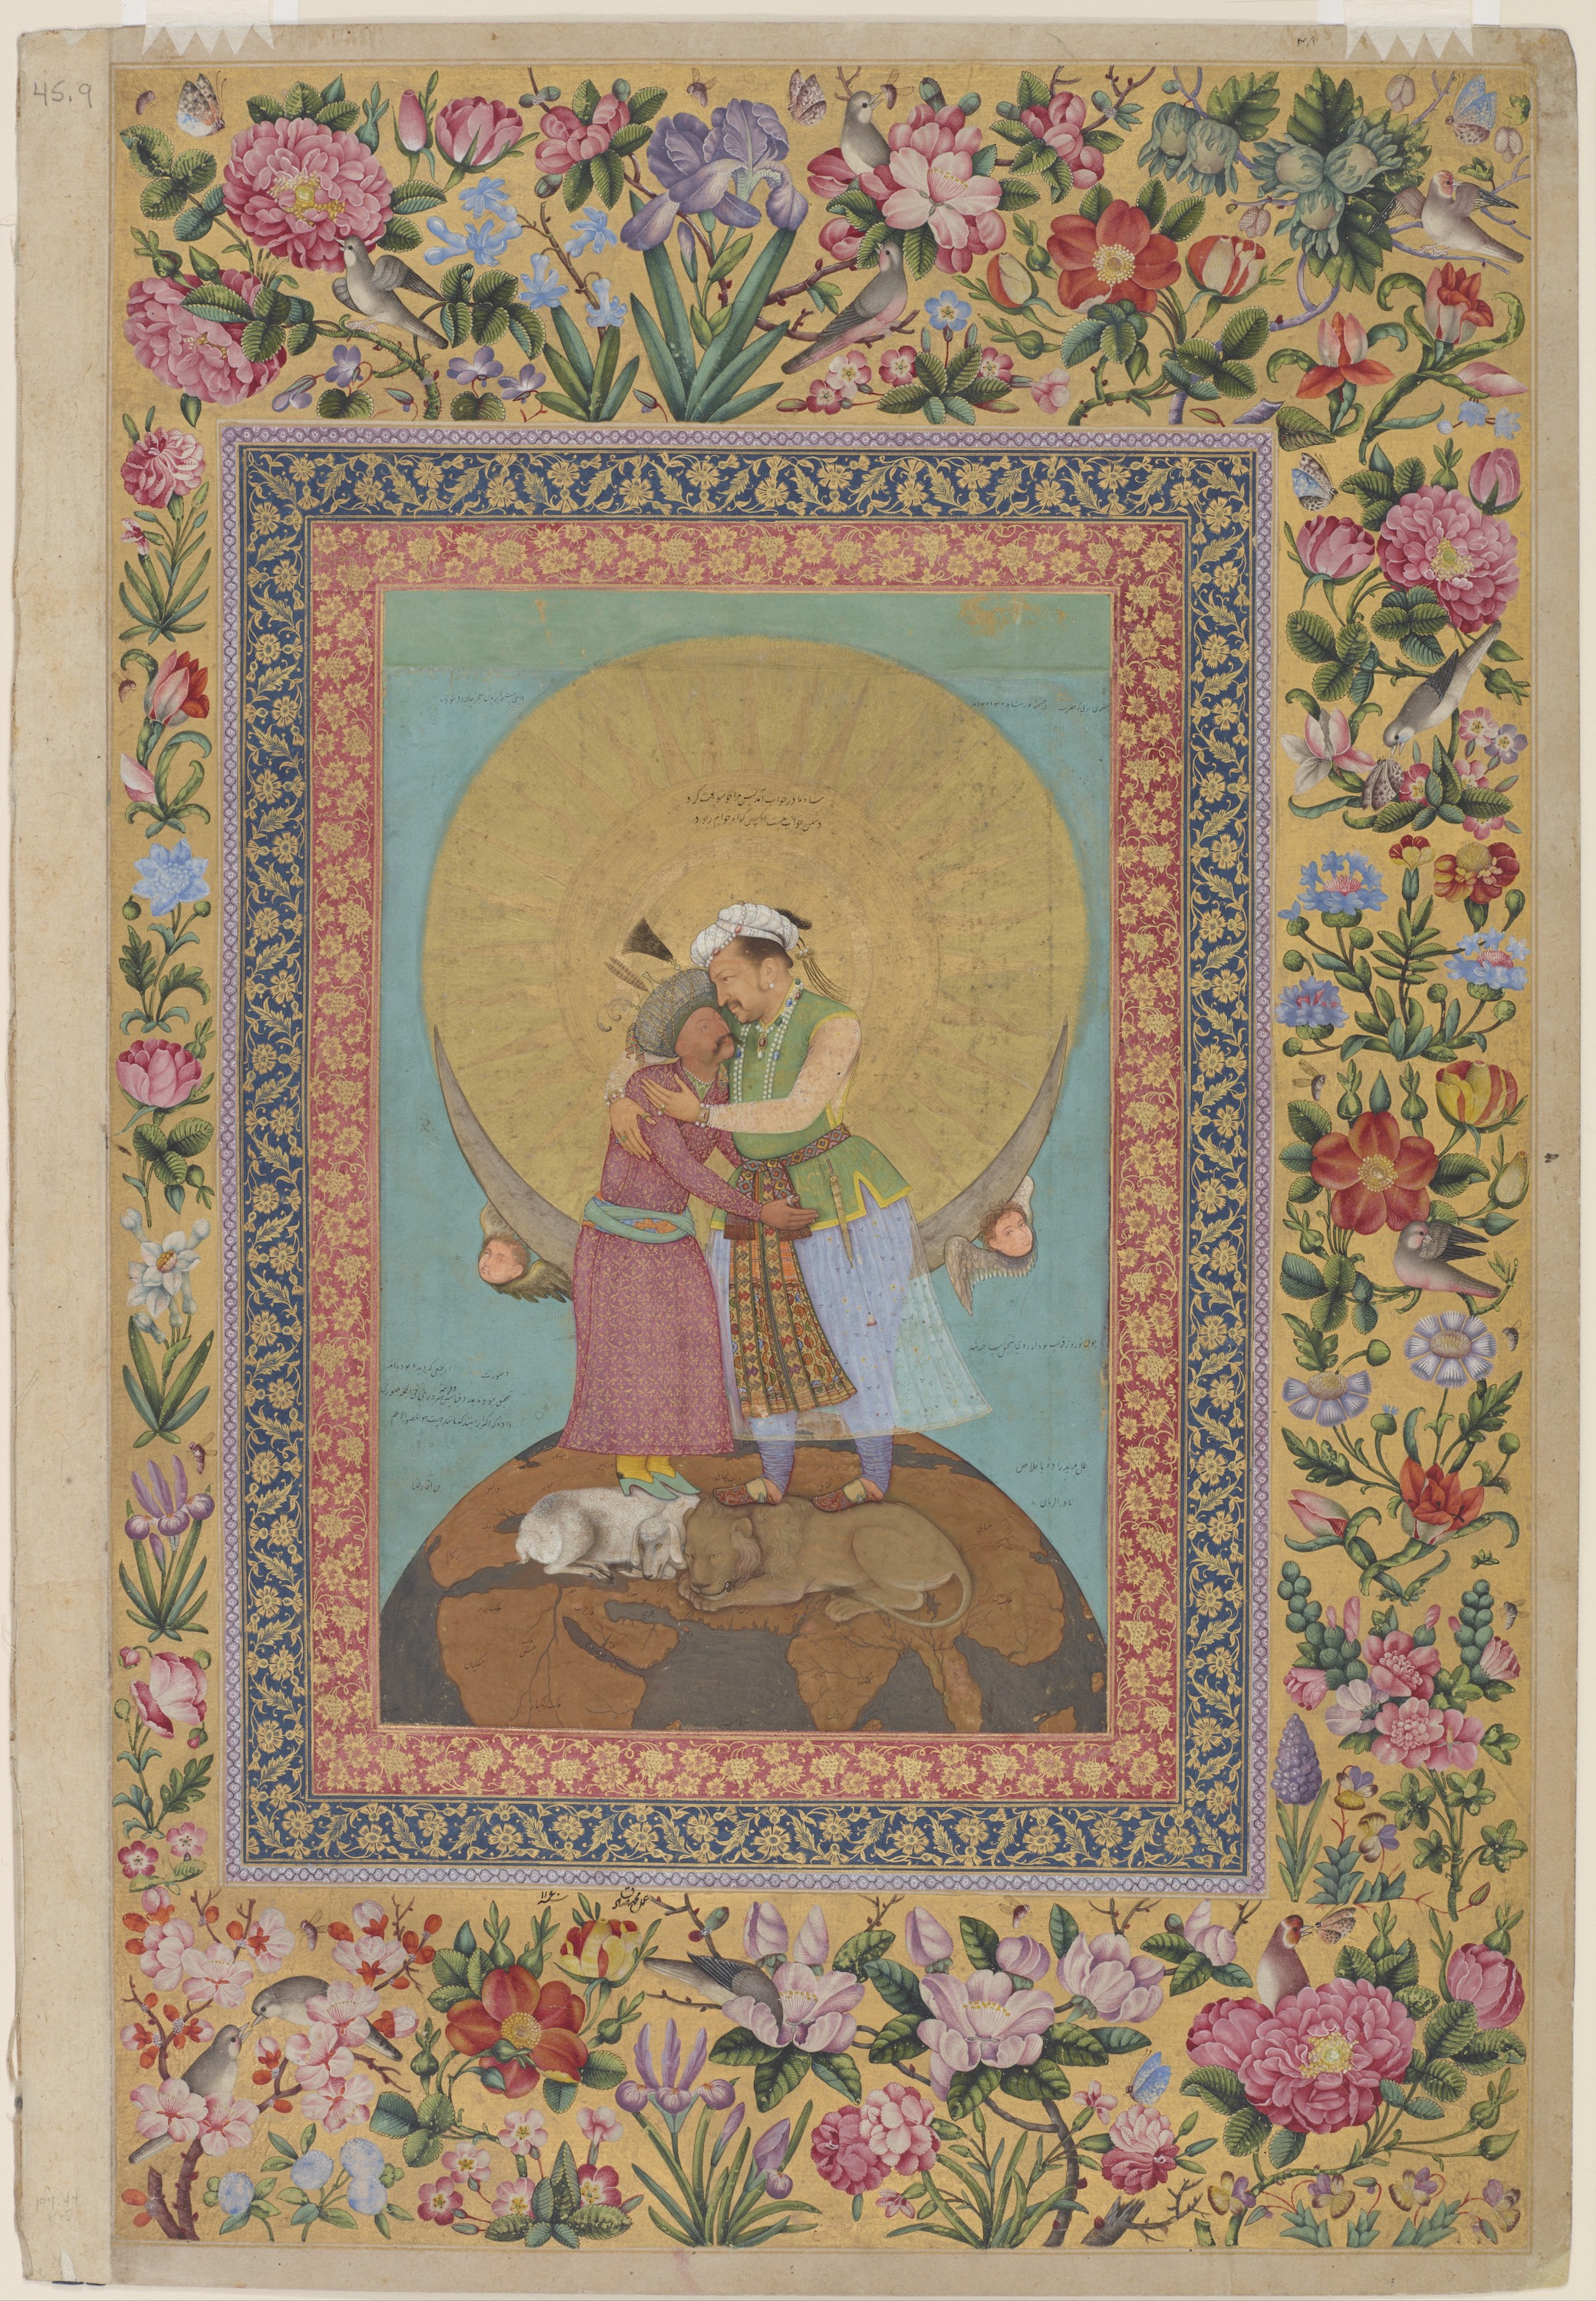 波斯国王贾汗吉尔和沙阿·阿巴斯的寓言 by 阿布 哈桑 - ca. 1618; margins 1747–48 - 9 3/8 x 6 1/16 in 